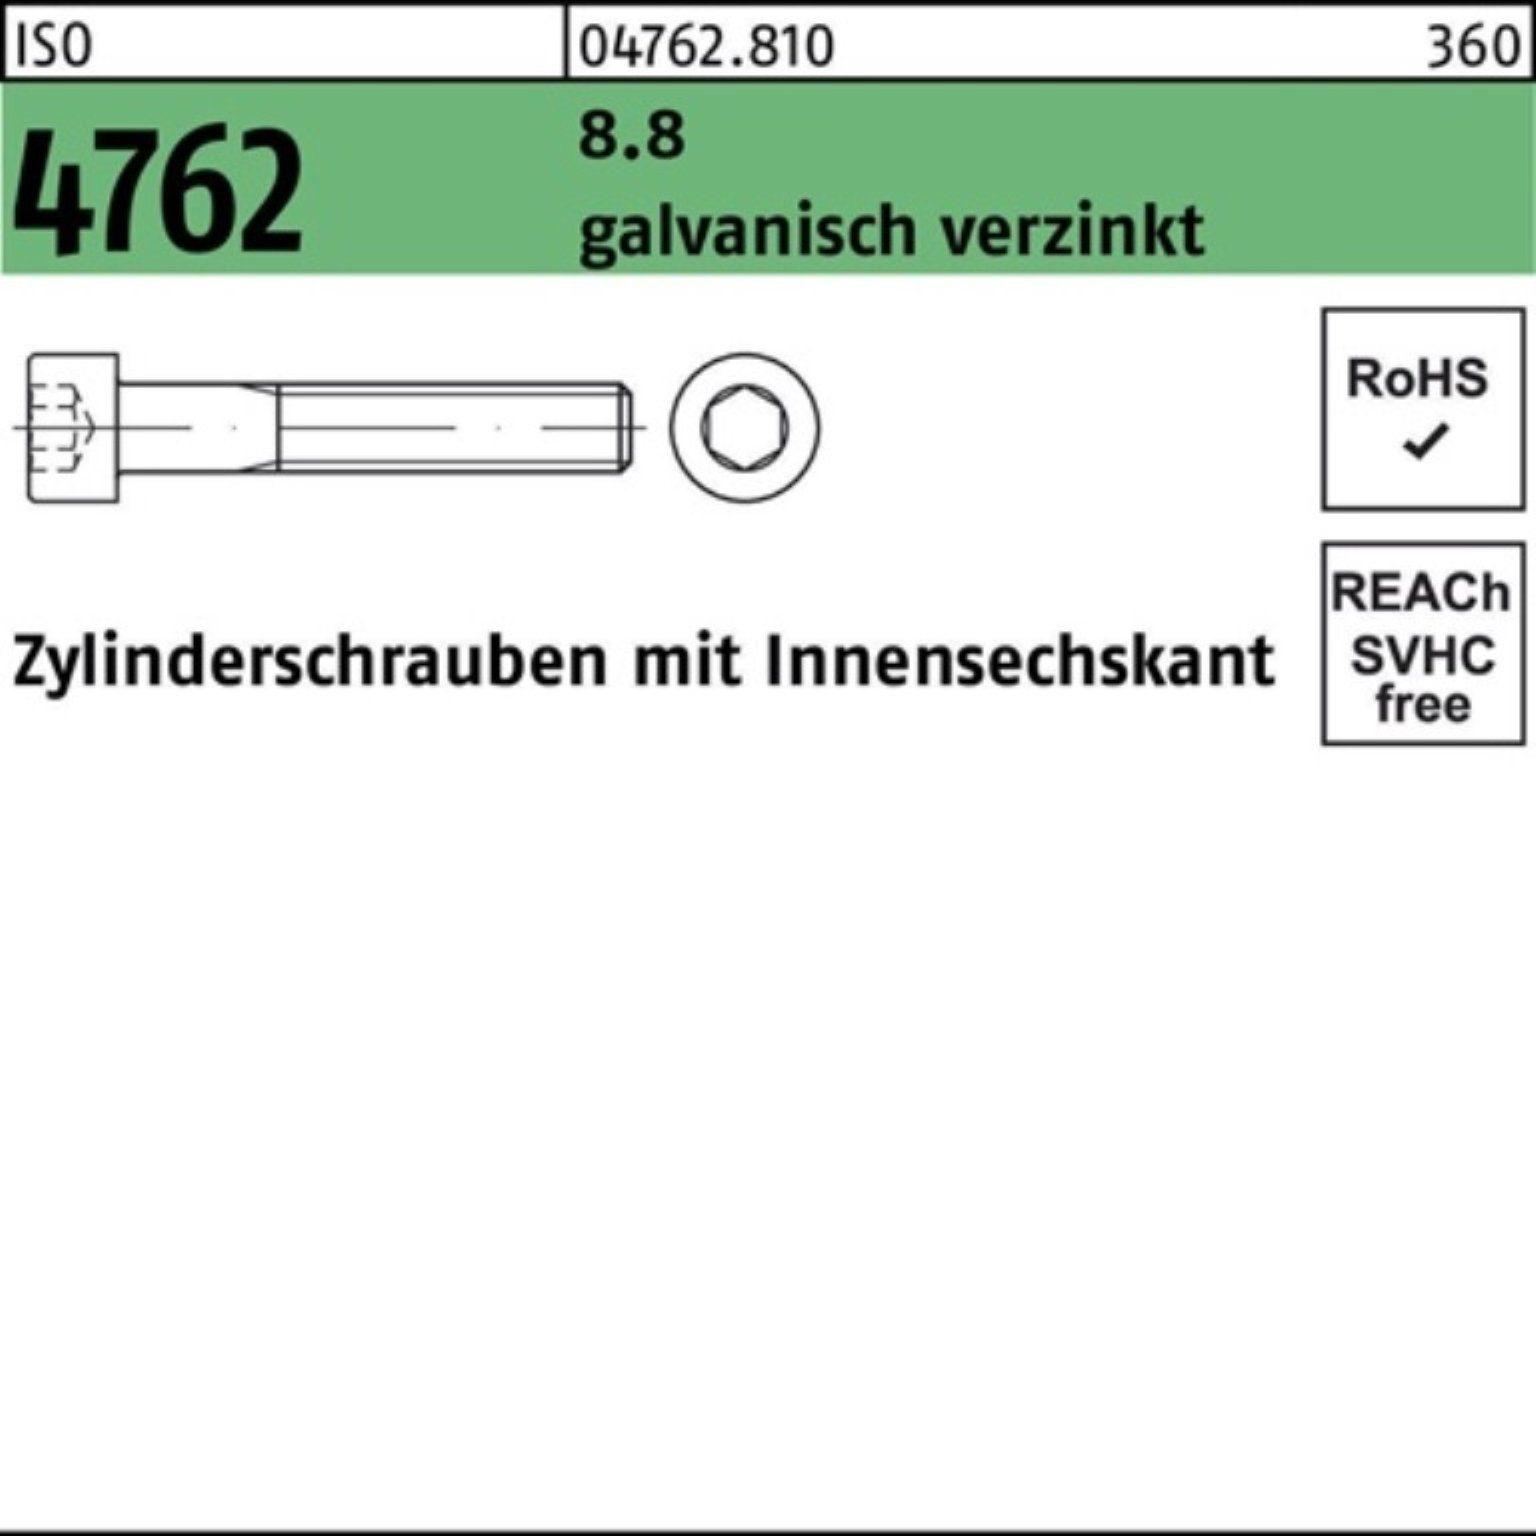 Pack Zylinderschraube Innen-6kt Zylinderschraube 5 M14x45 galv.verz. 4762 Reyher ISO 100er 8.8